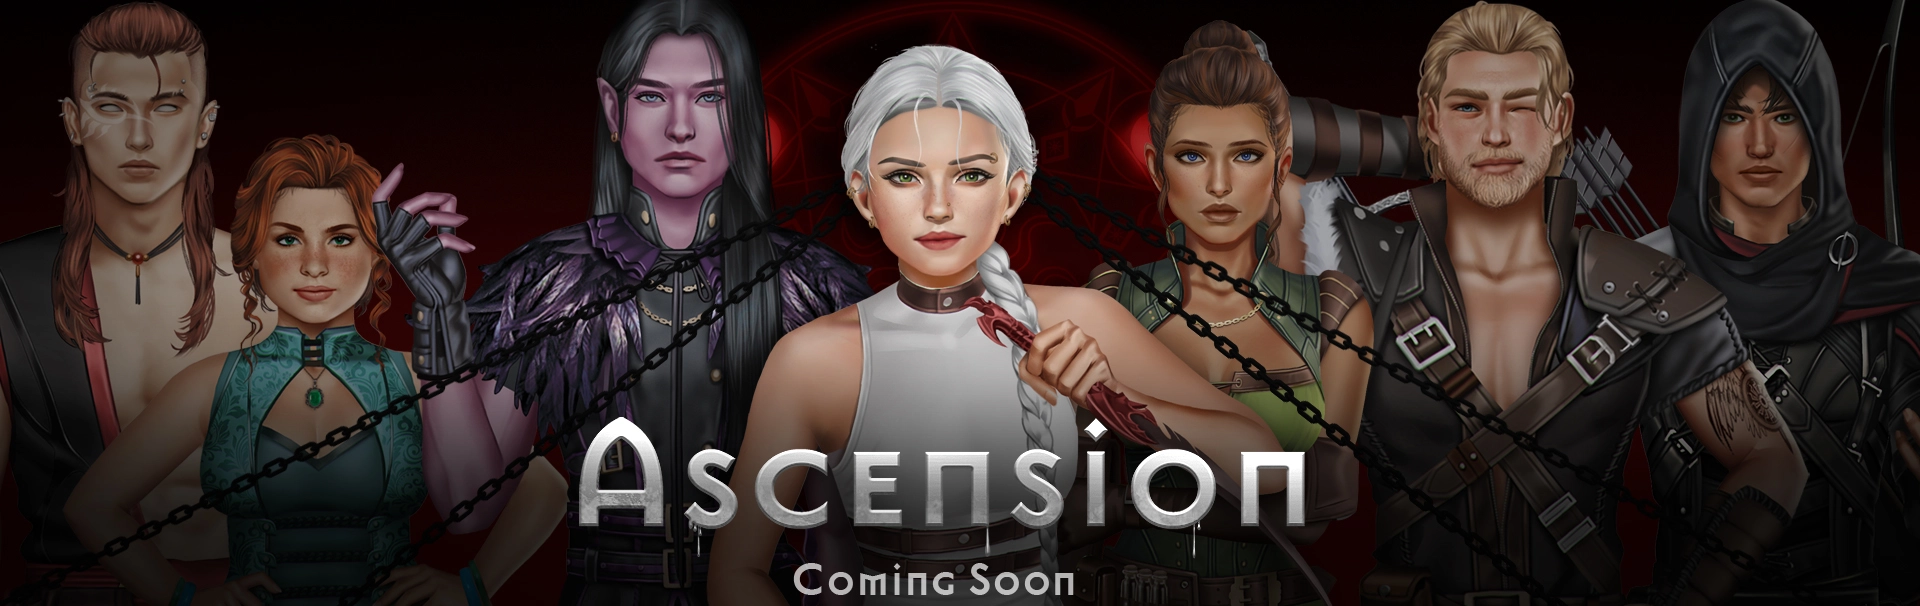 Ascension: Remake header image